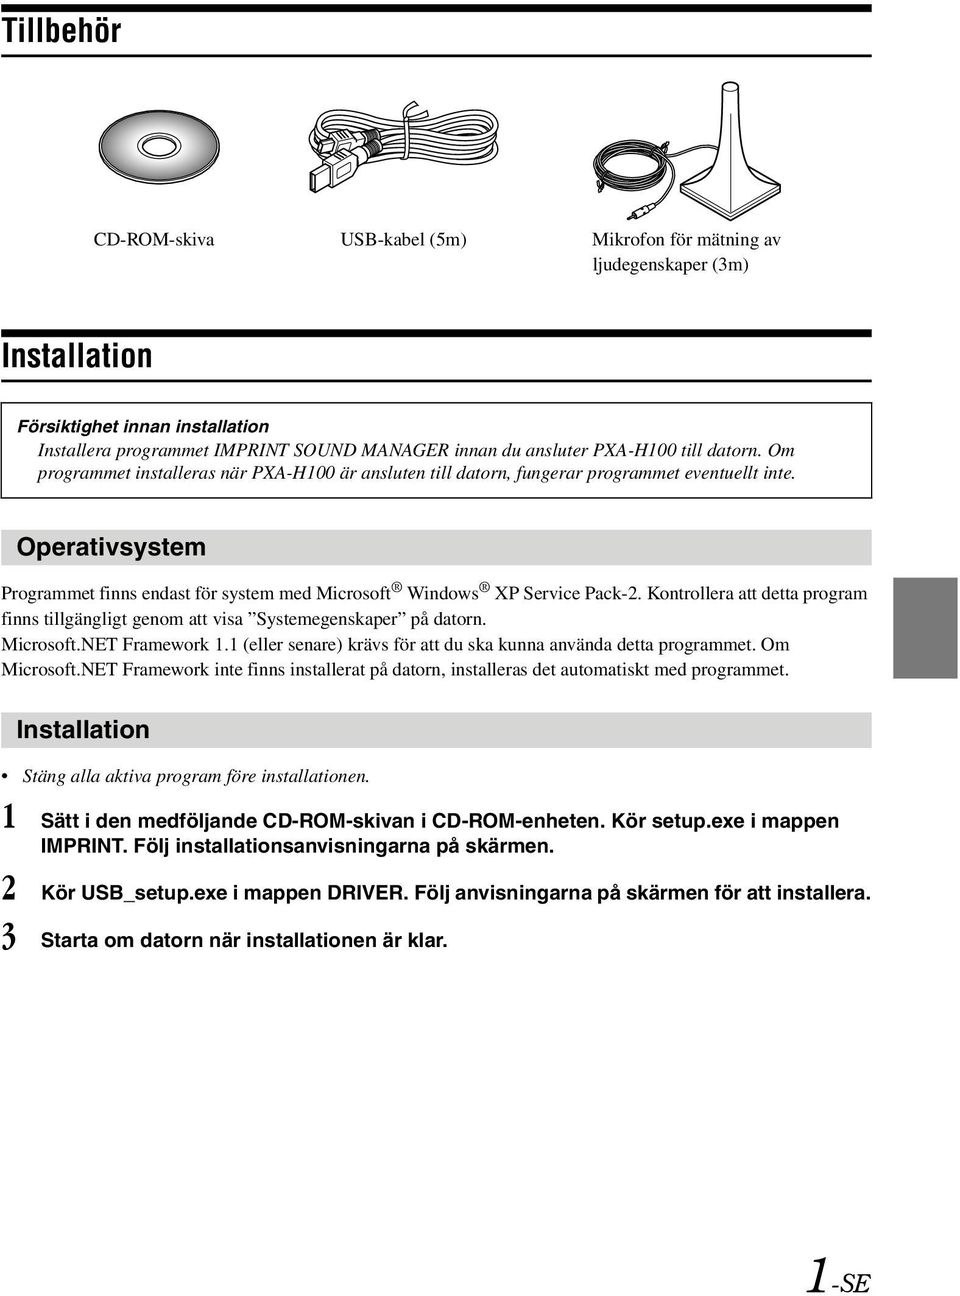 Operativsystem Programmet finns endast för system med Microsoft Windows XP Service Pack-2. Kontrollera att detta program finns tillgängligt genom att visa Systemegenskaper på datorn. Microsoft.NET Framework 1.